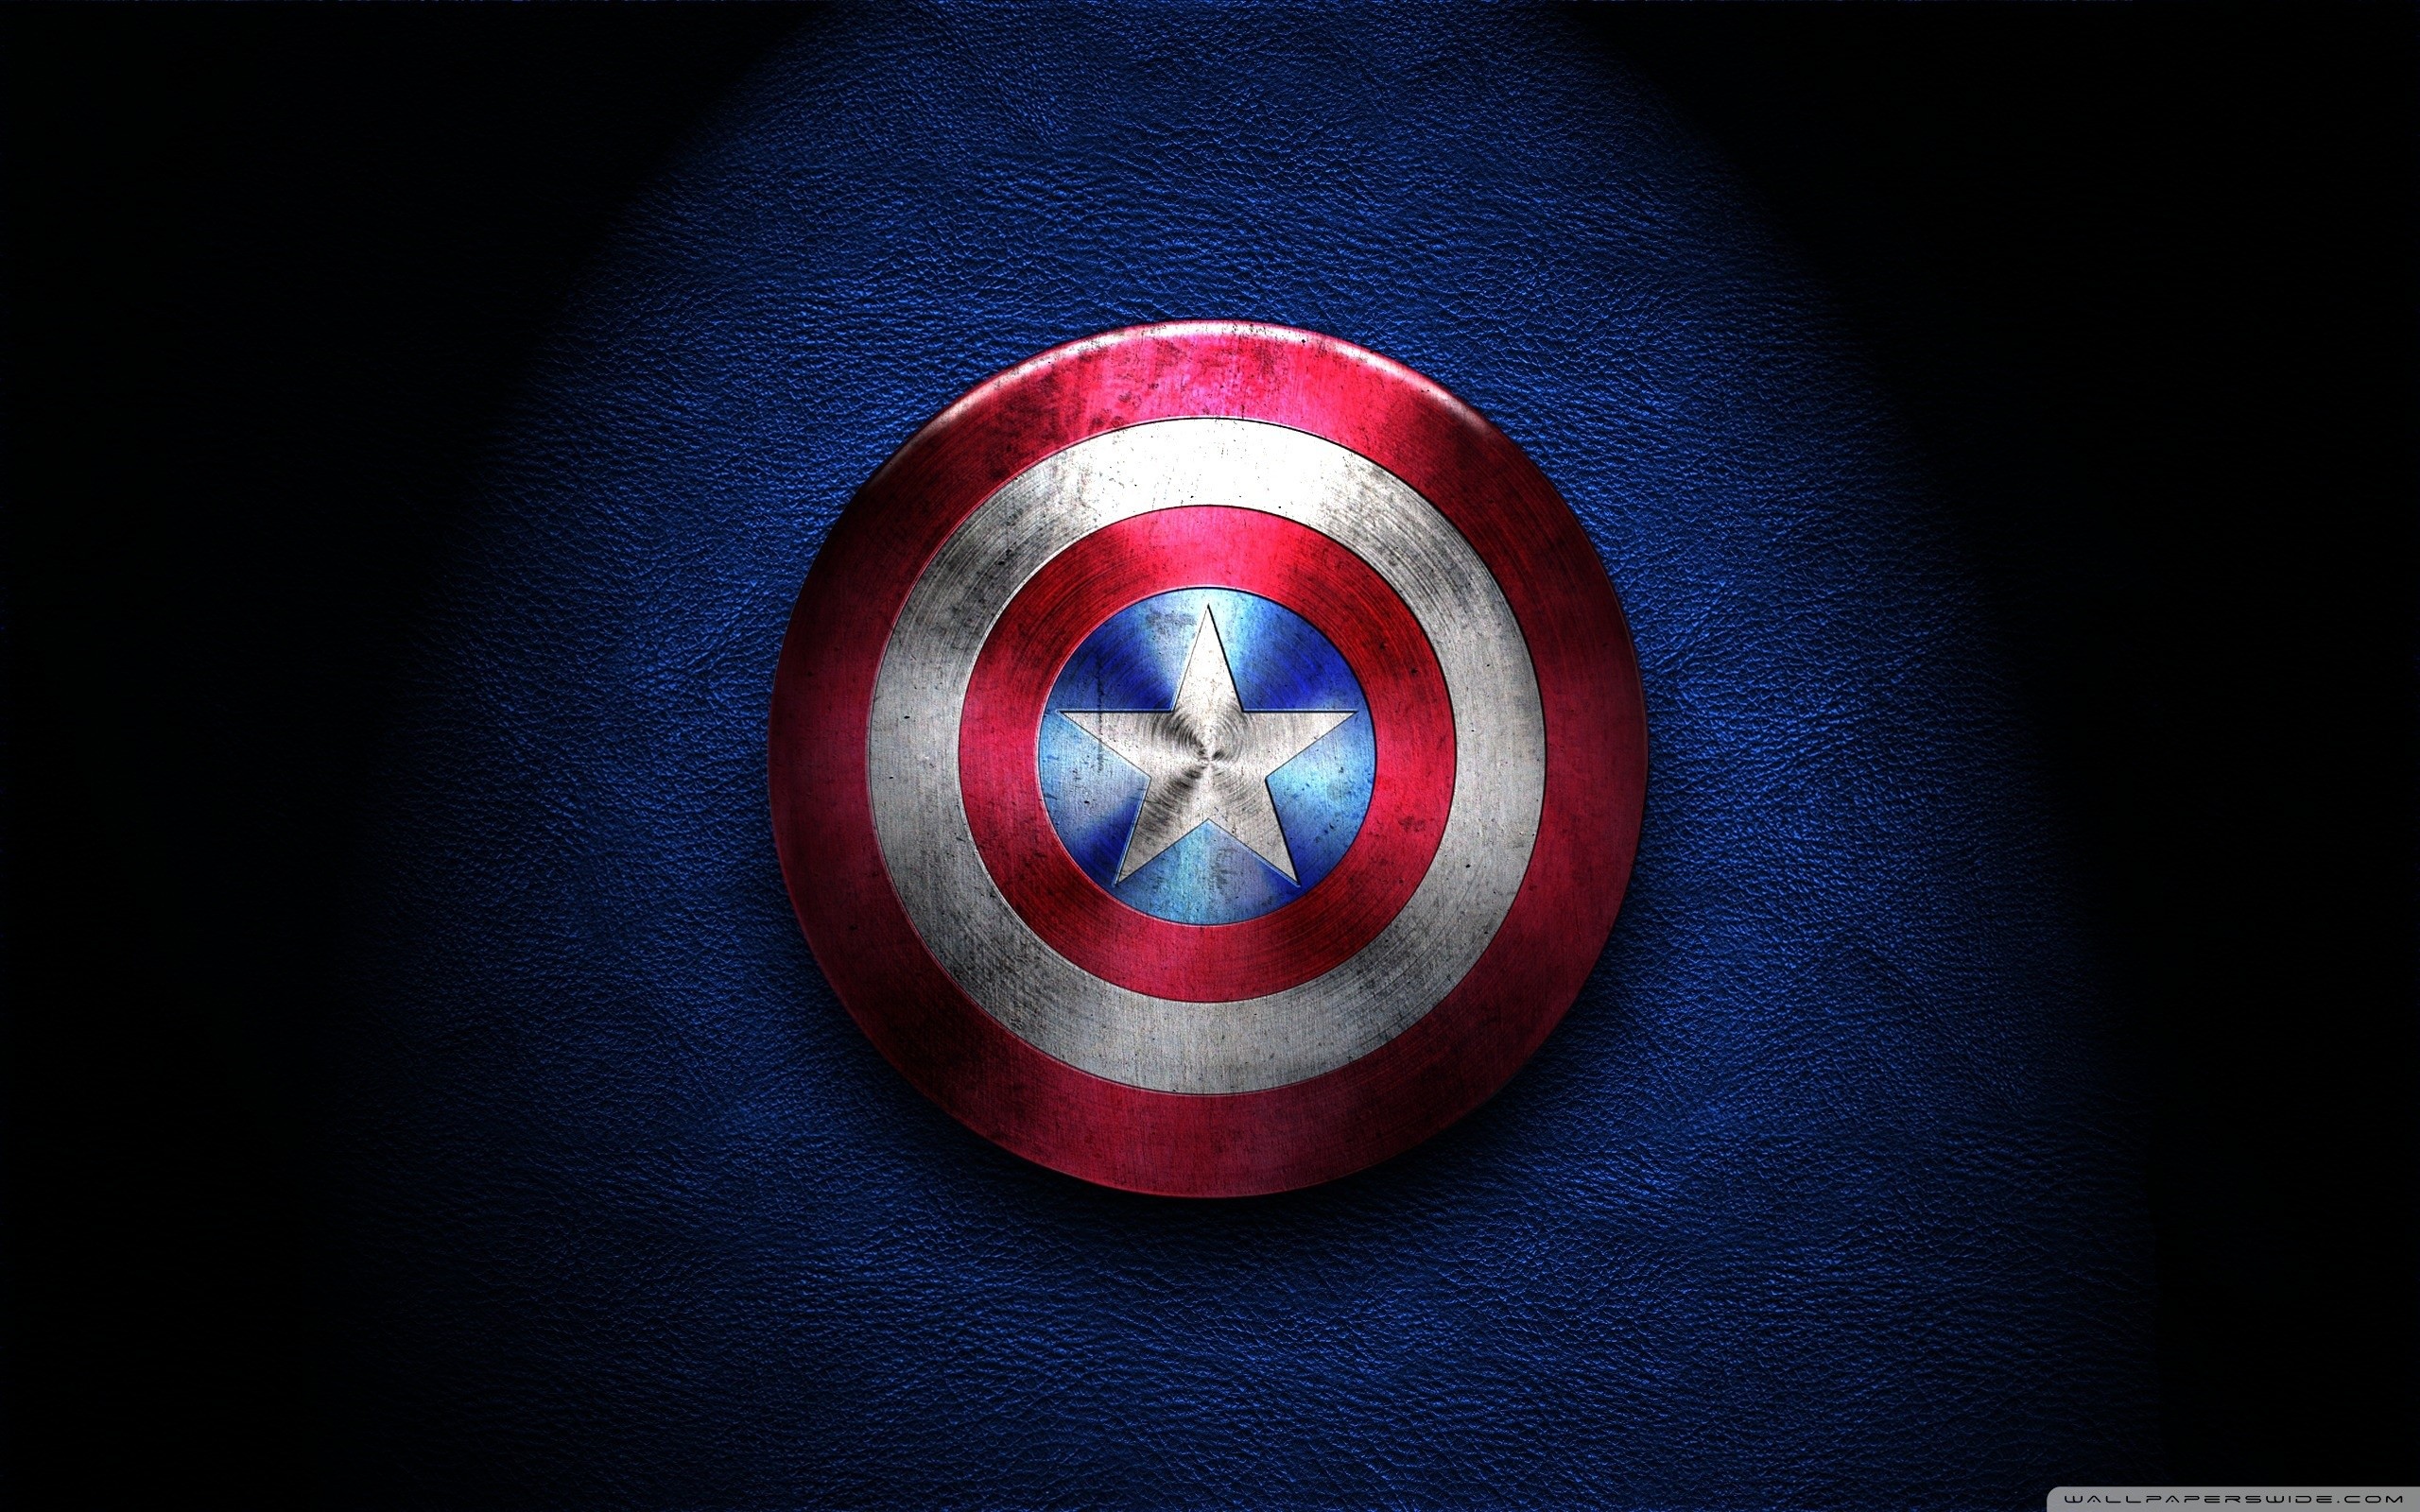 Captain America Shield HD Wide Wallpaper for Widescreen